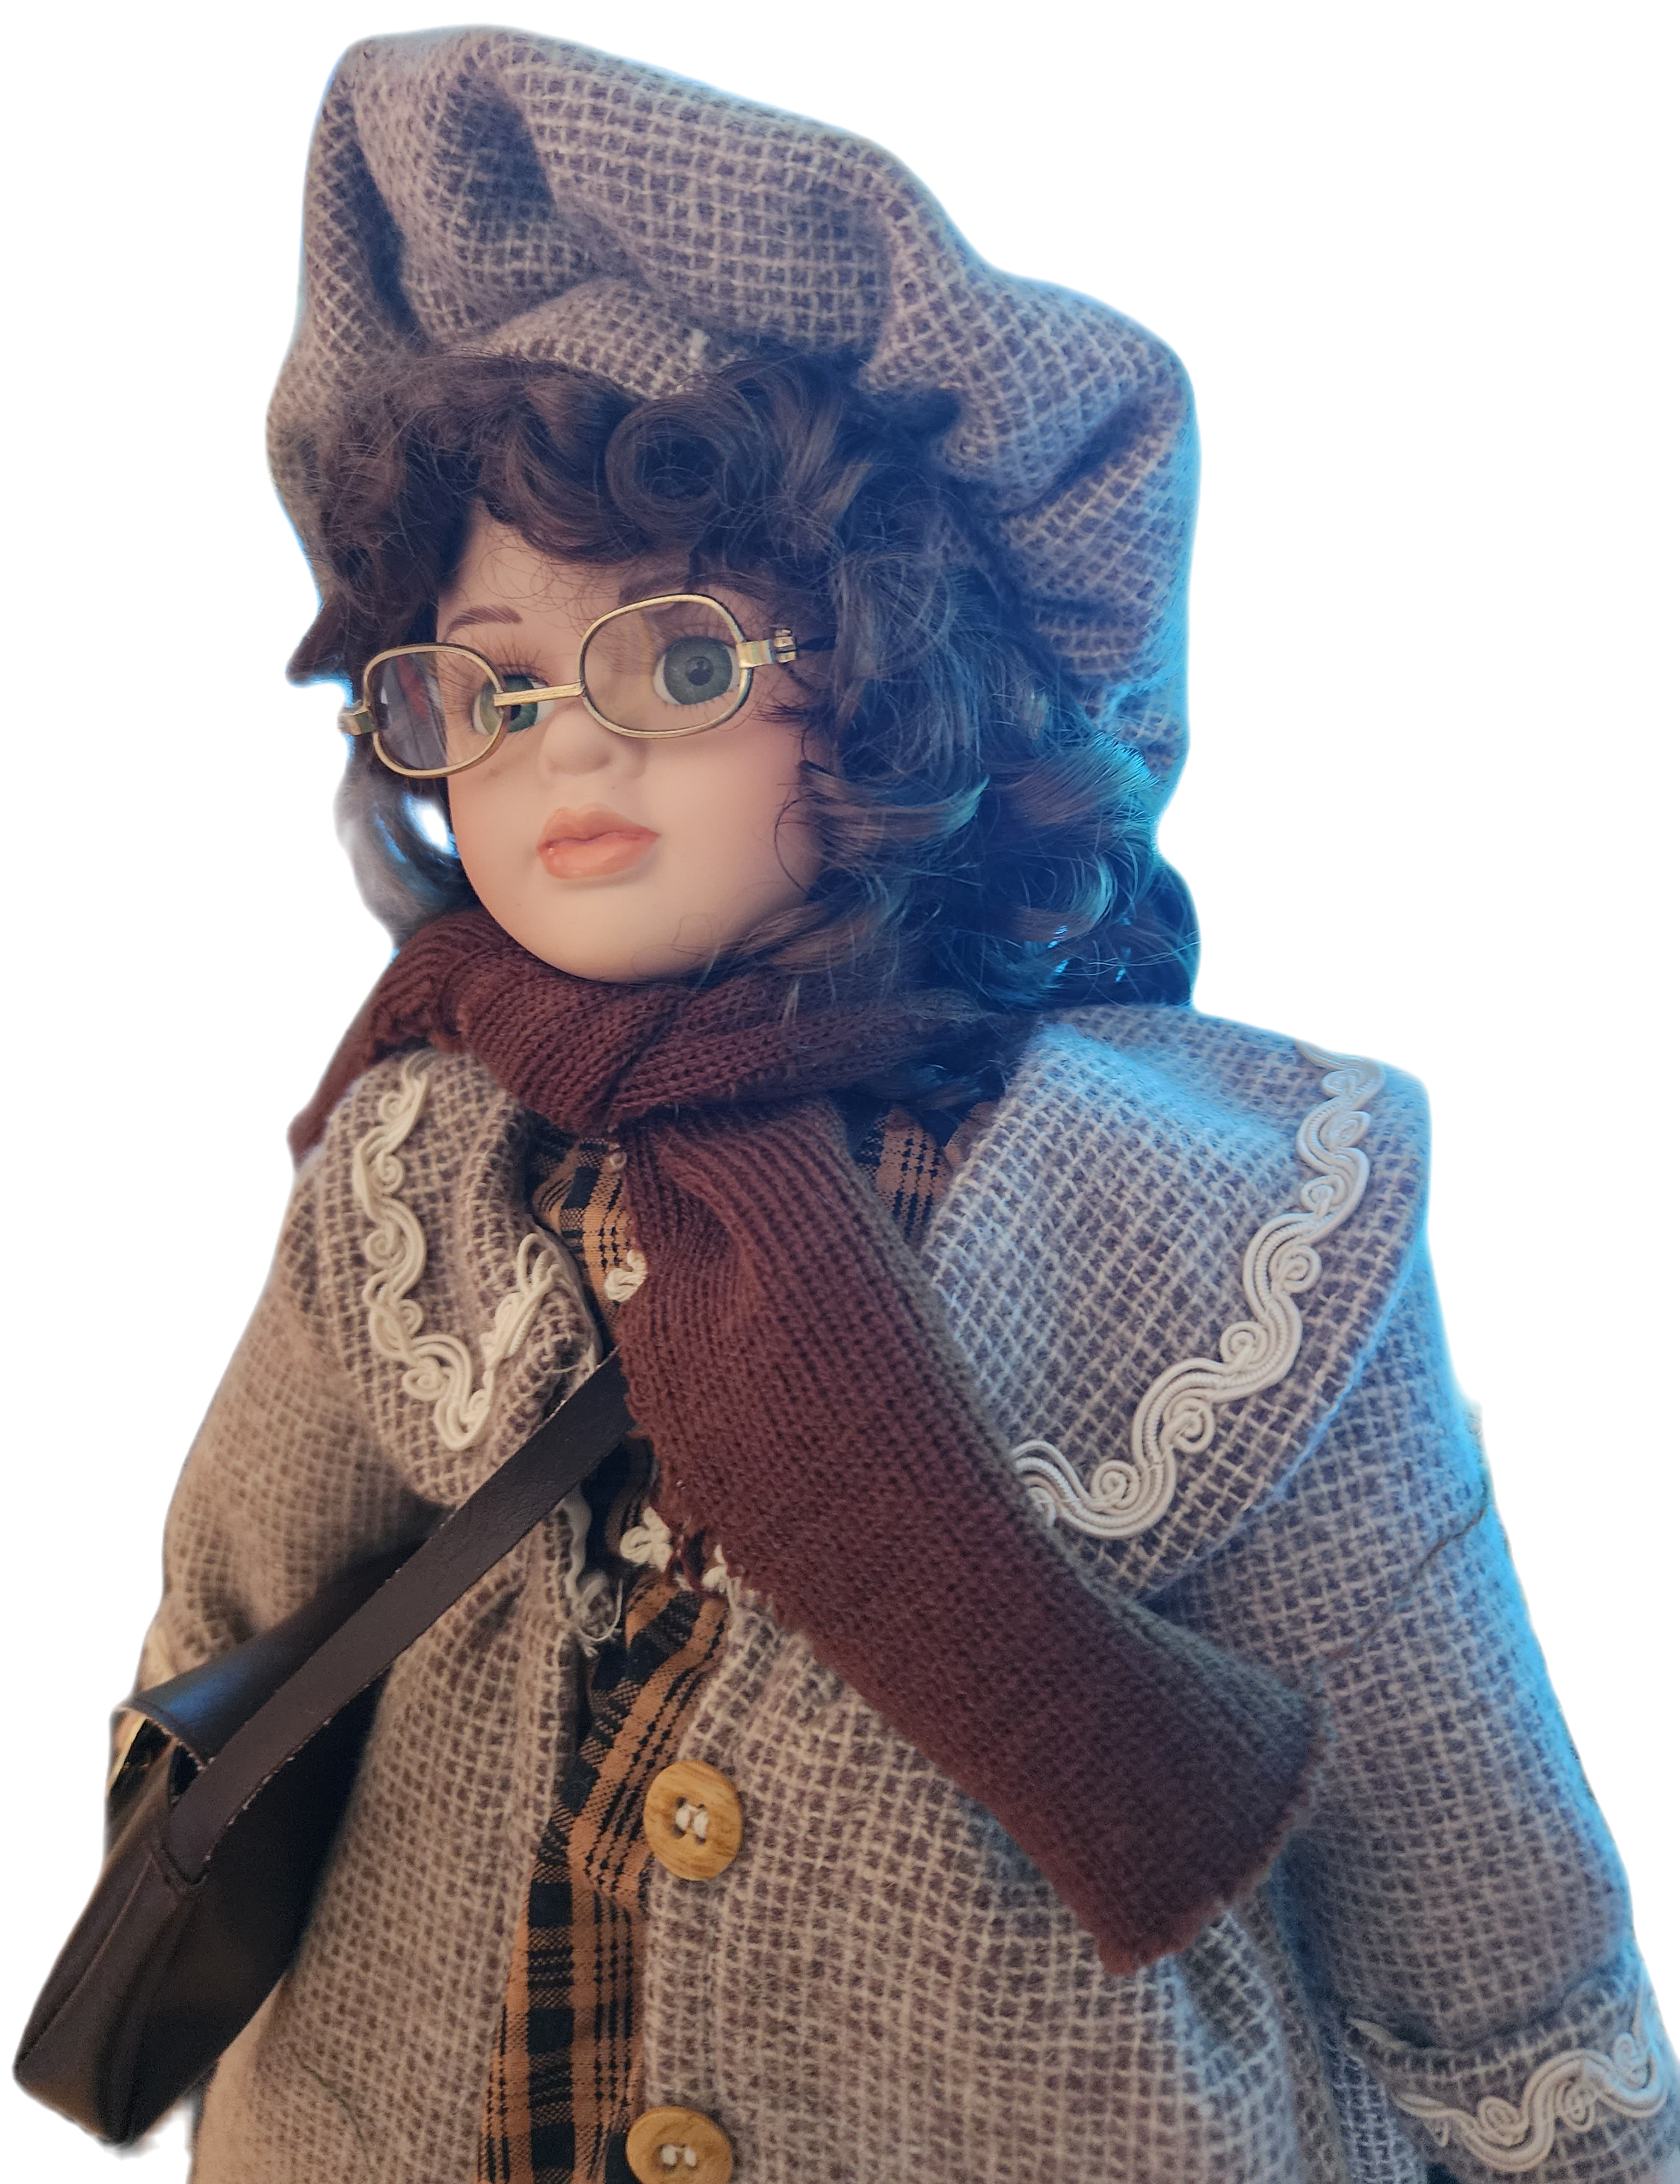 Marsha -Spirited Haunted Doll, Brain Power & Spirit Communication